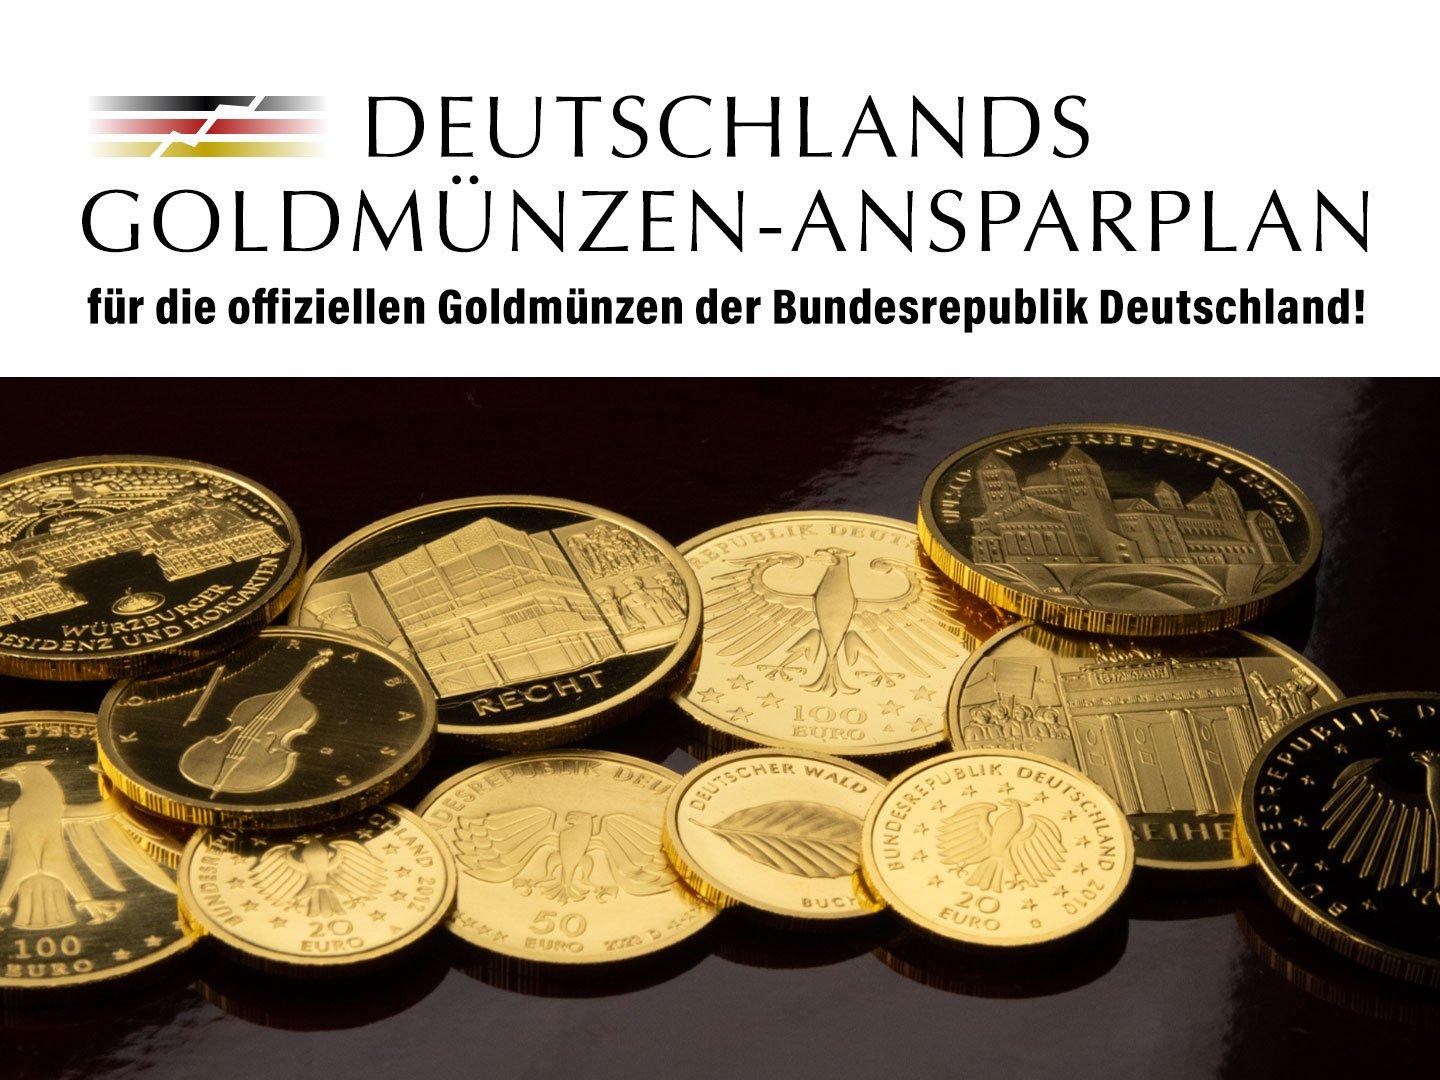 Die offiziellen Goldmünzen der Bundesrepublik Deutschland